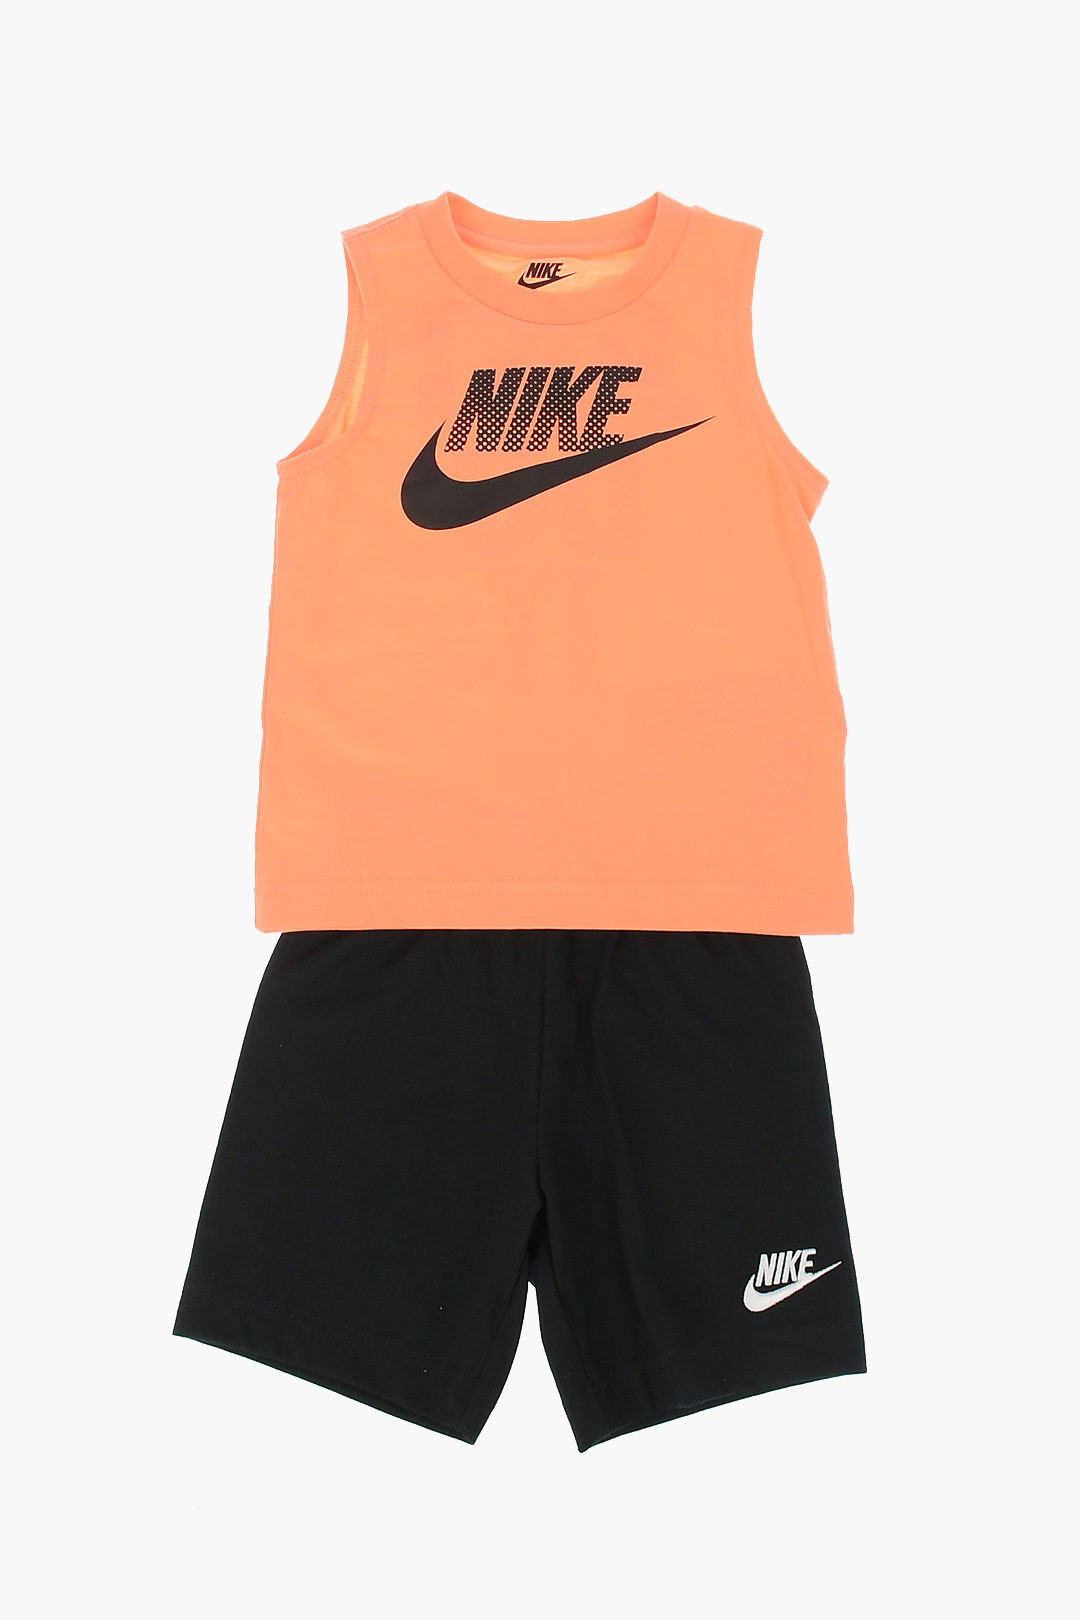 Nike KIDS Sleeveless T-shirt and Shorts Set boys - Glamood Outlet